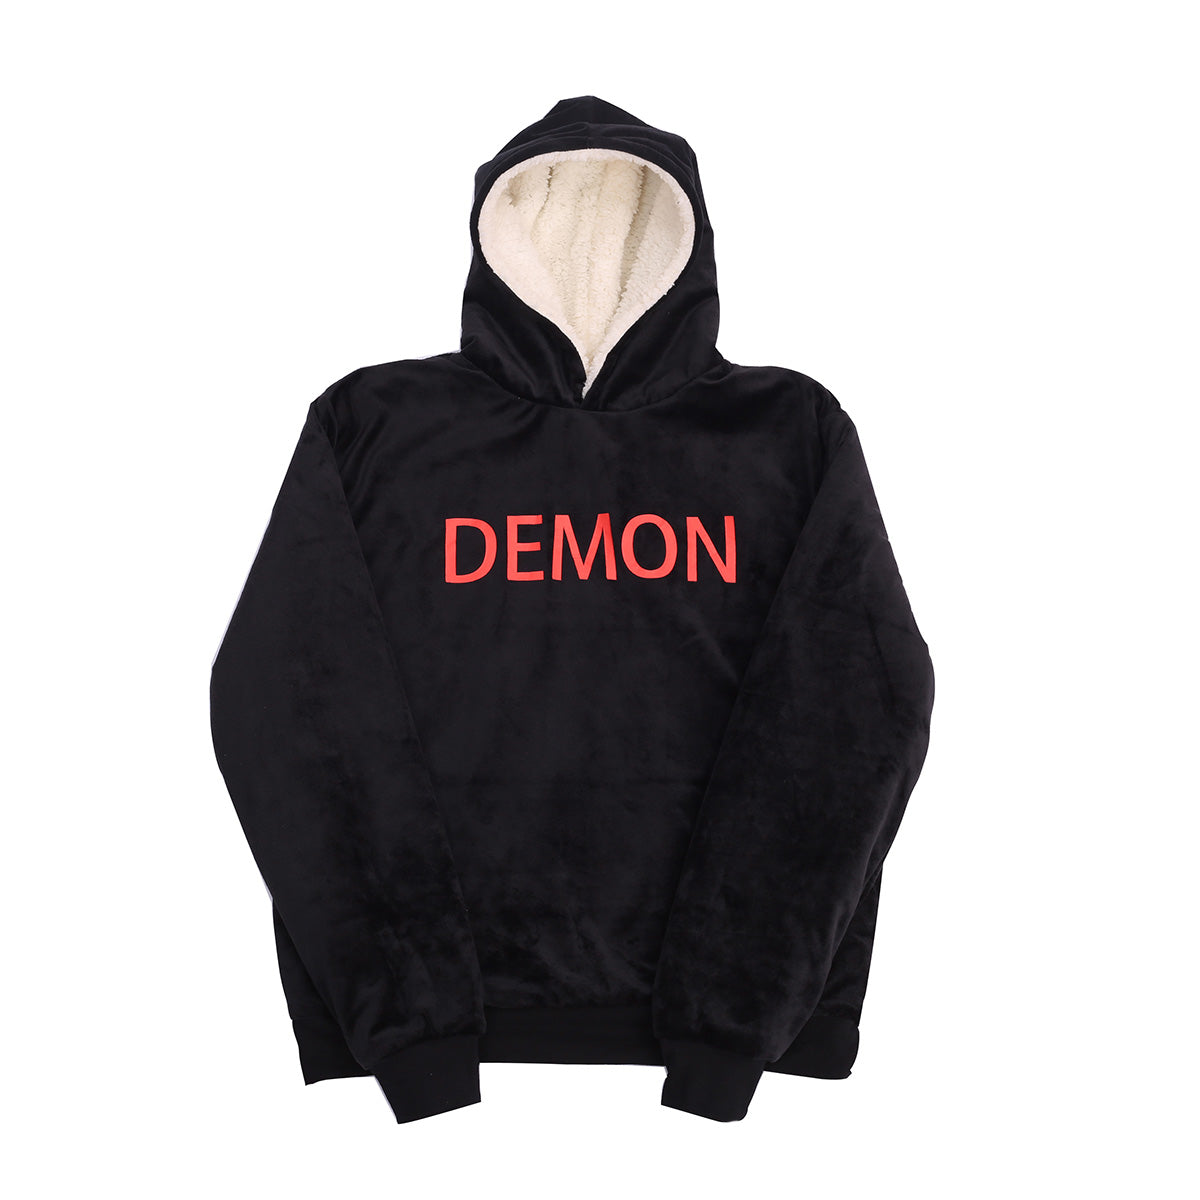 half demon half angel hoodie